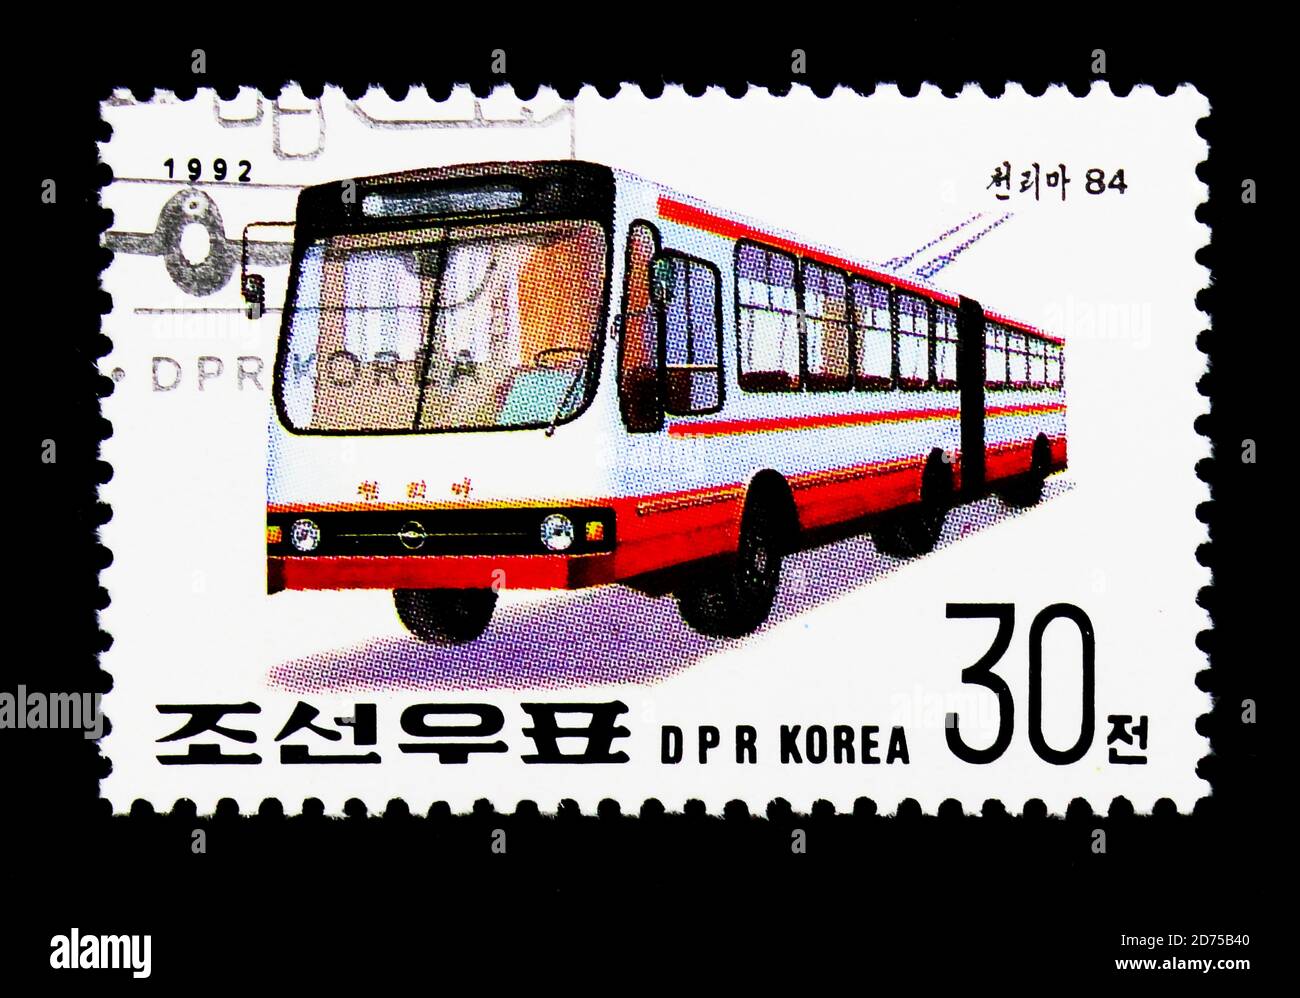 MOSCOU, RUSSIE - 25 NOVEMBRE 2017 : un timbre imprimé en république populaire démocratique de Corée montre trolleybus - Tcheullima 84, International Stamp Exh Banque D'Images